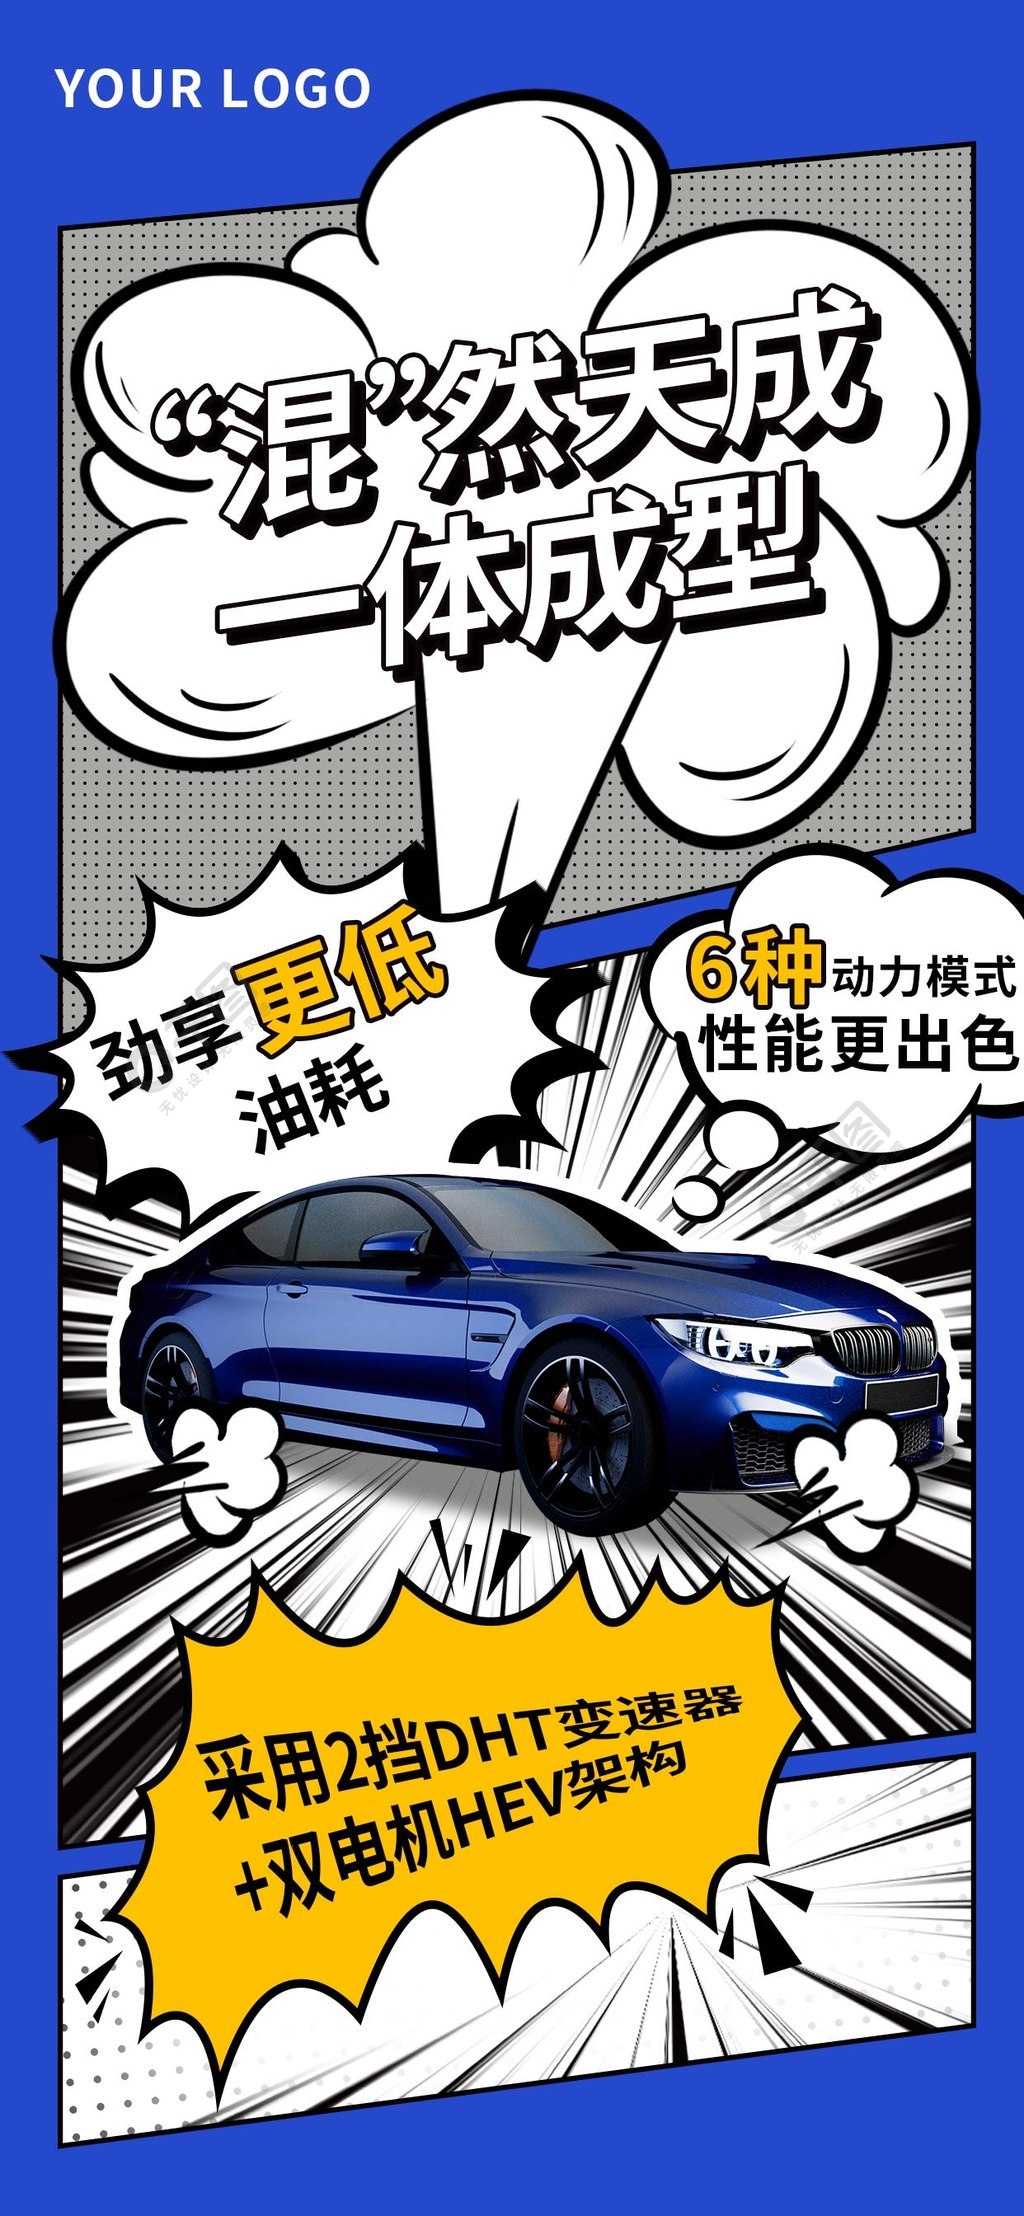 漫画风汽车营销宣传海报